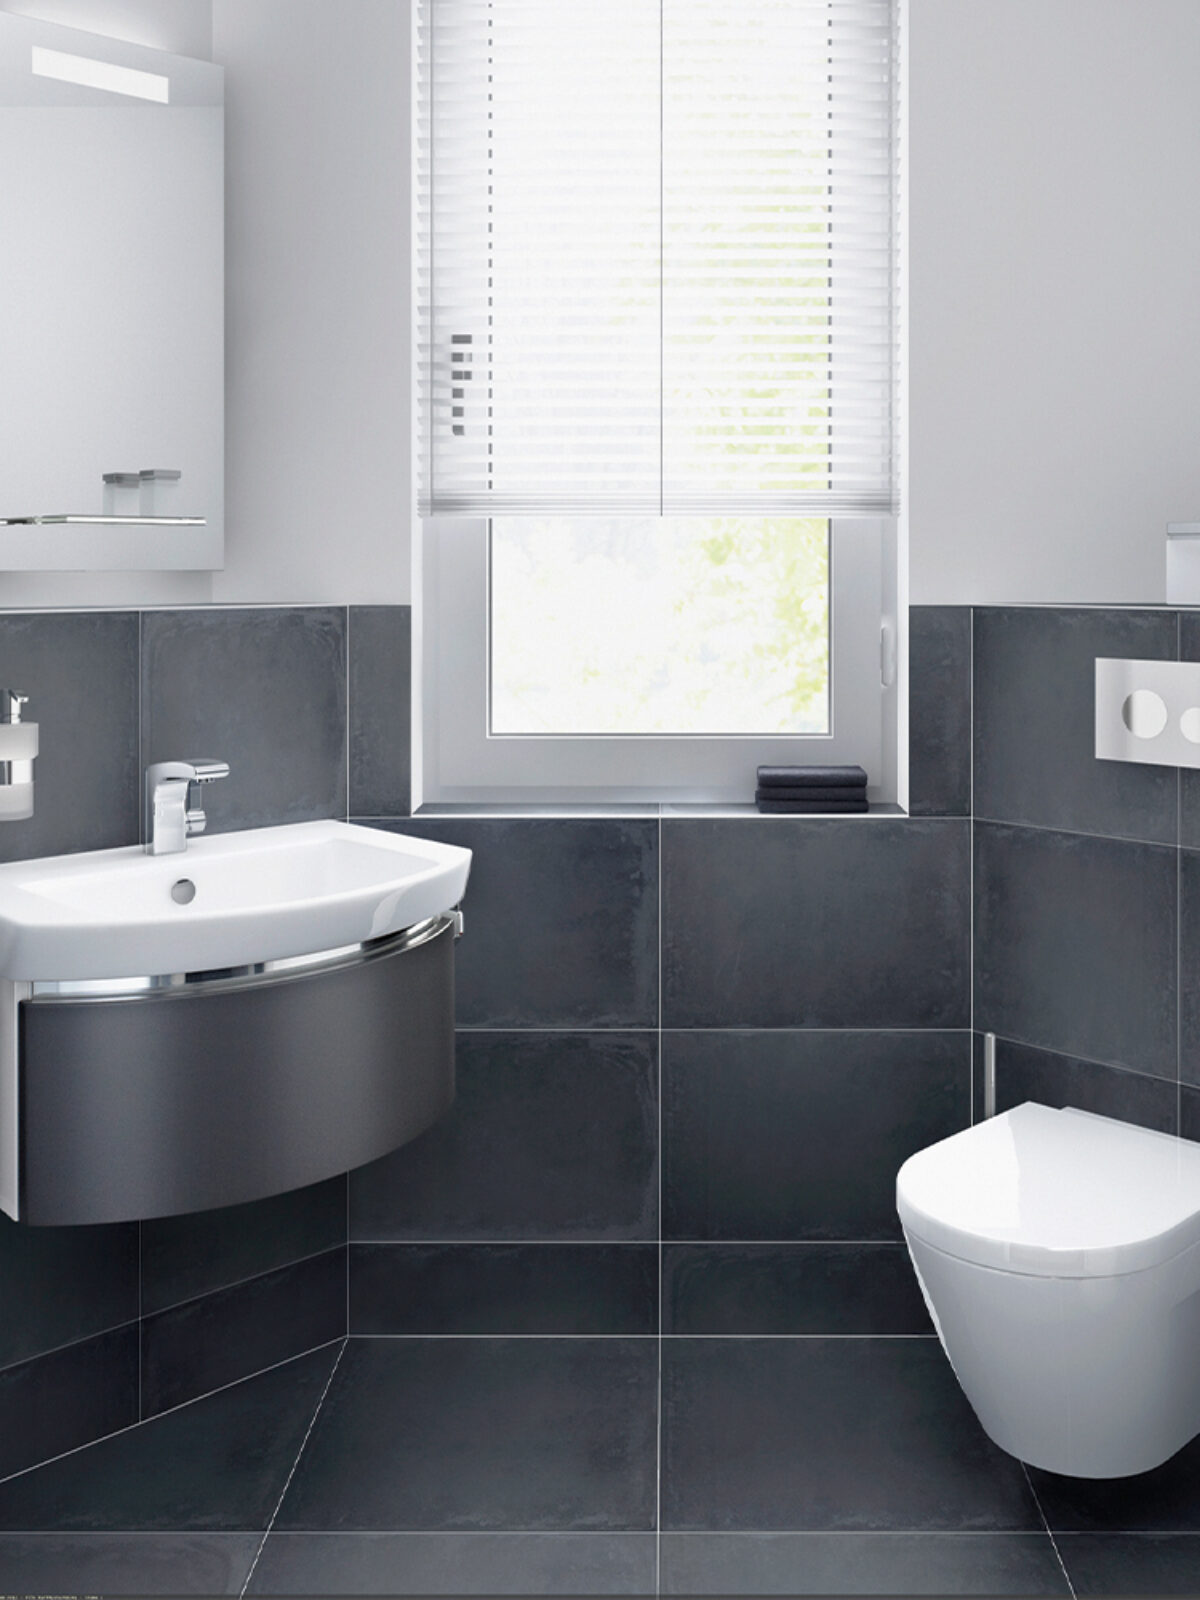 Modernes graues Badezimmer, dass links eine Waschbecken mit Spiegel zeigt. In der mitte ein Fenster und auf der rechten Seite ein WC.